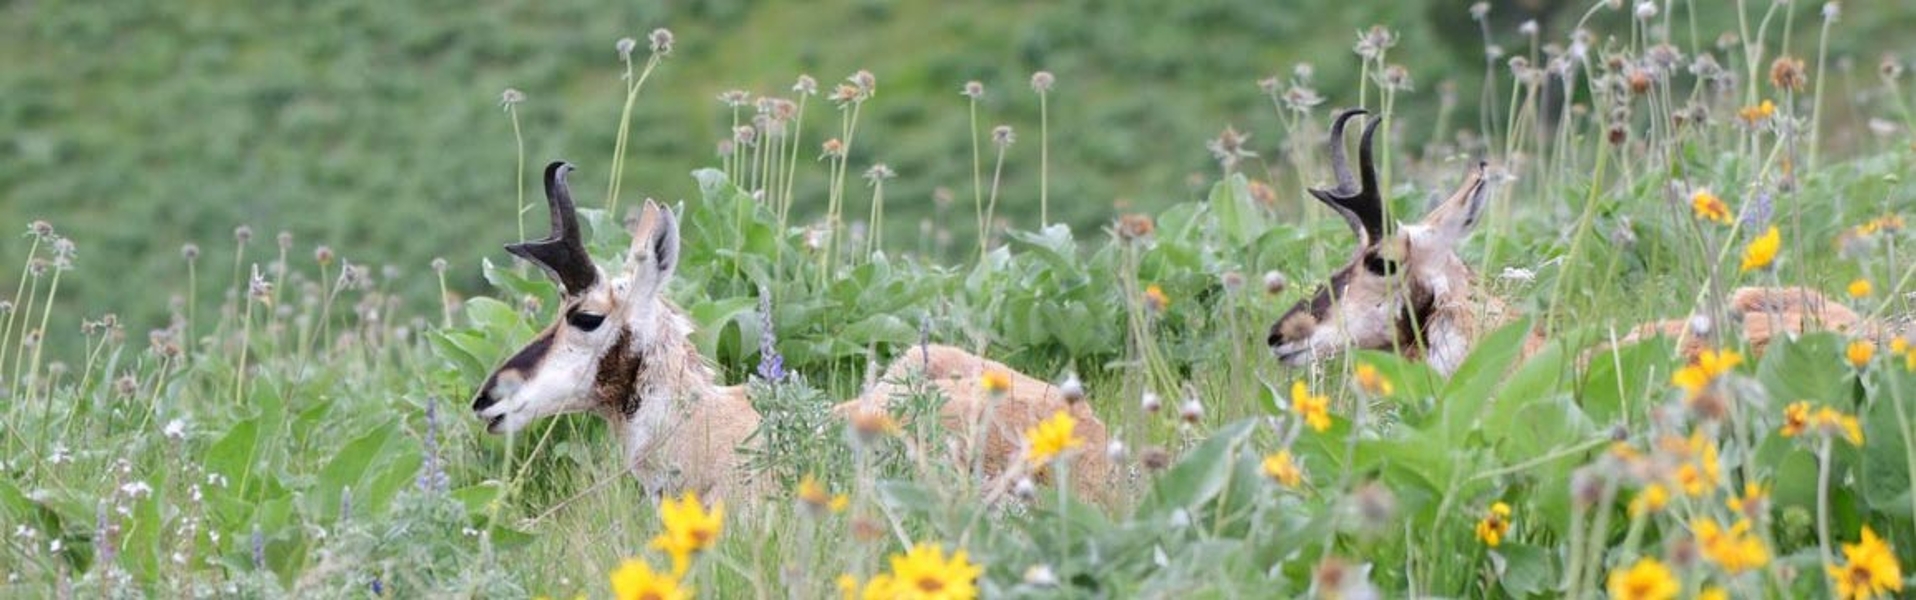 Pronghorn in spring wildflowers